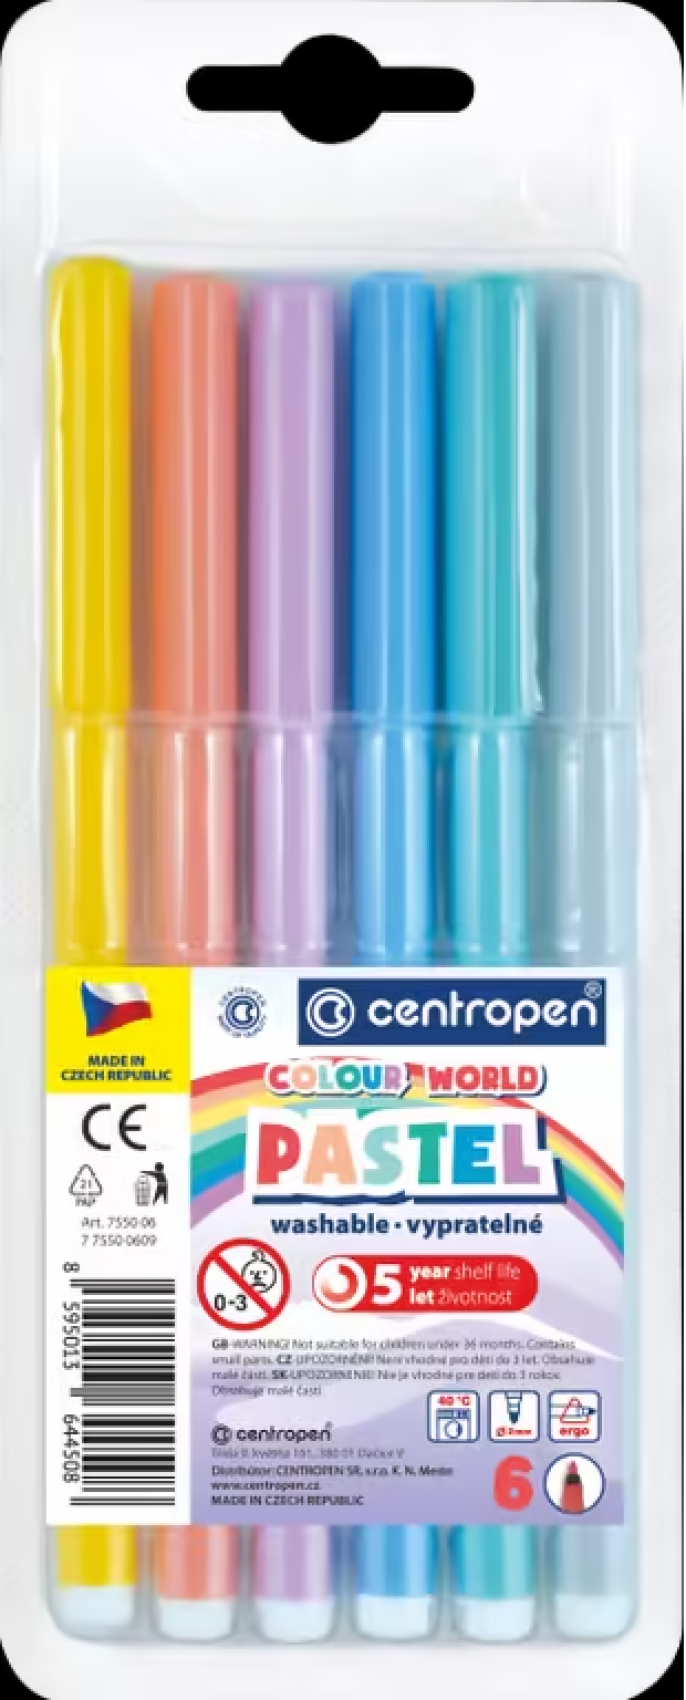 Popisova Centropen 7550/6ks pastelov barvy - Kliknutm na obrzek zavete